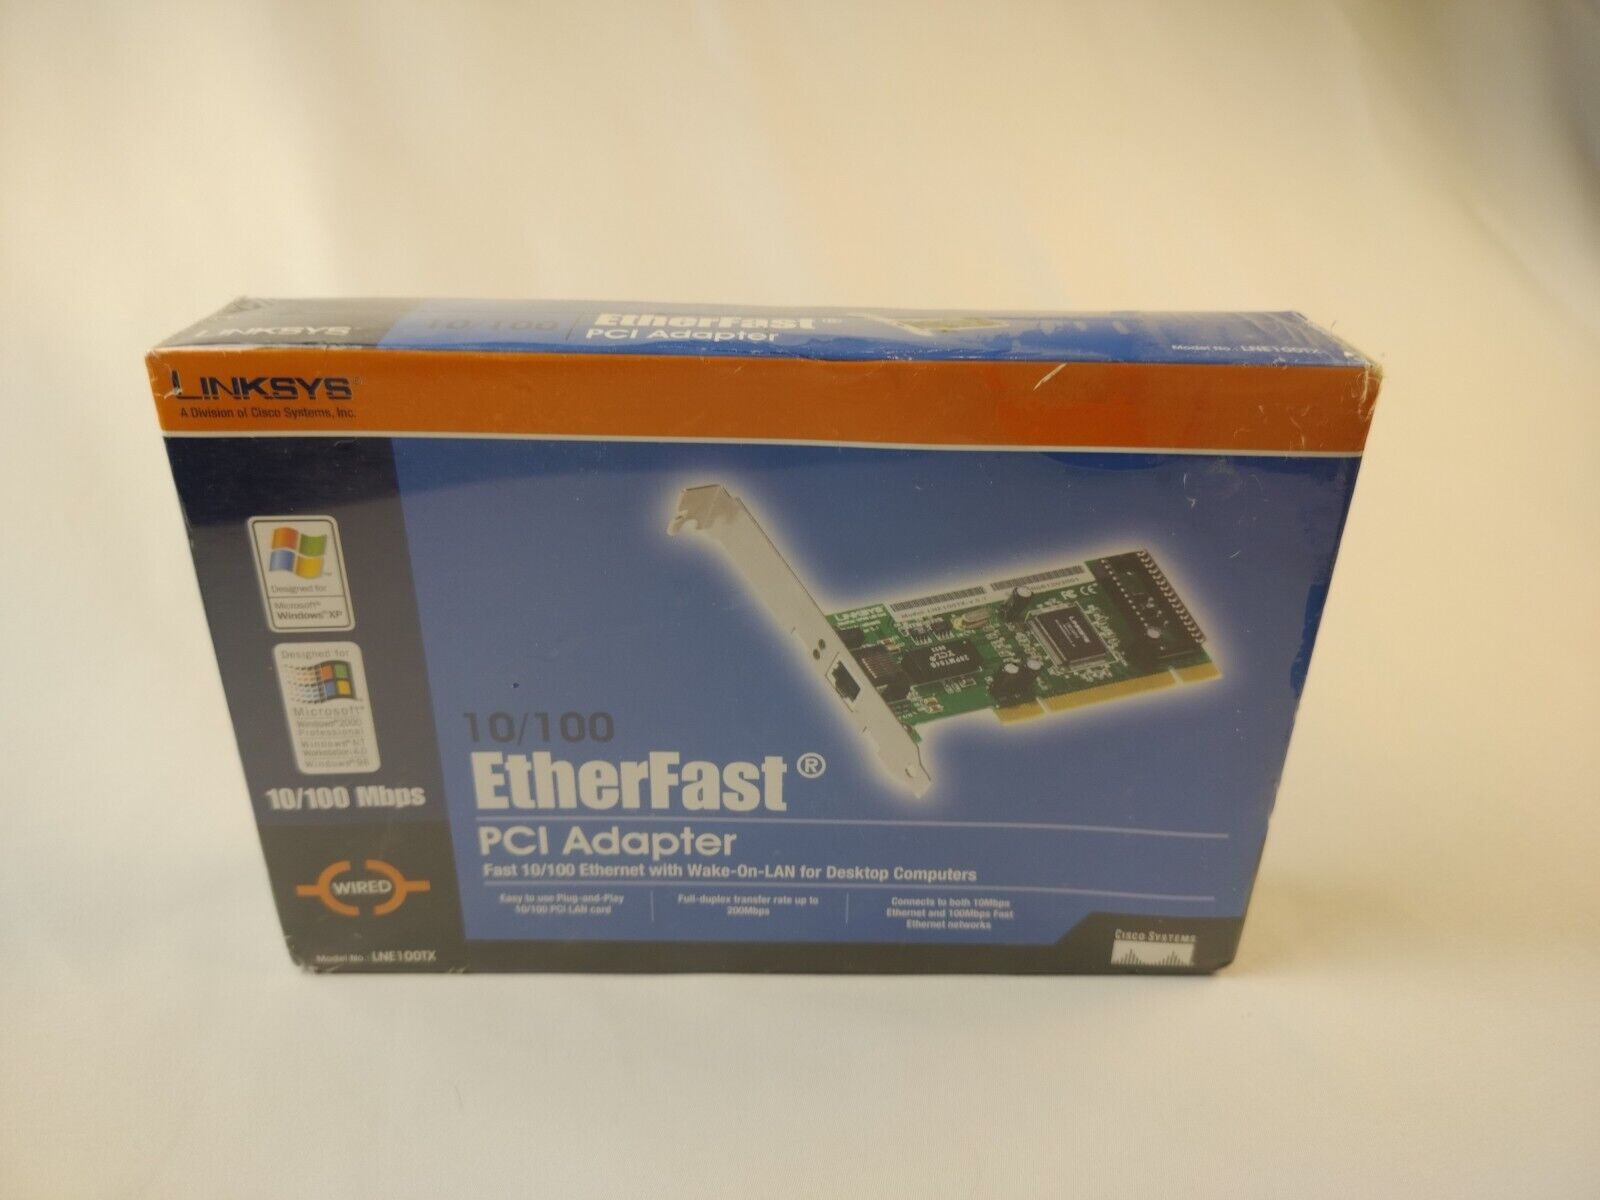 Sealed Linksys 10/100 LAN Card Etherfast Model LNE100TX PCI Adapter Desktop